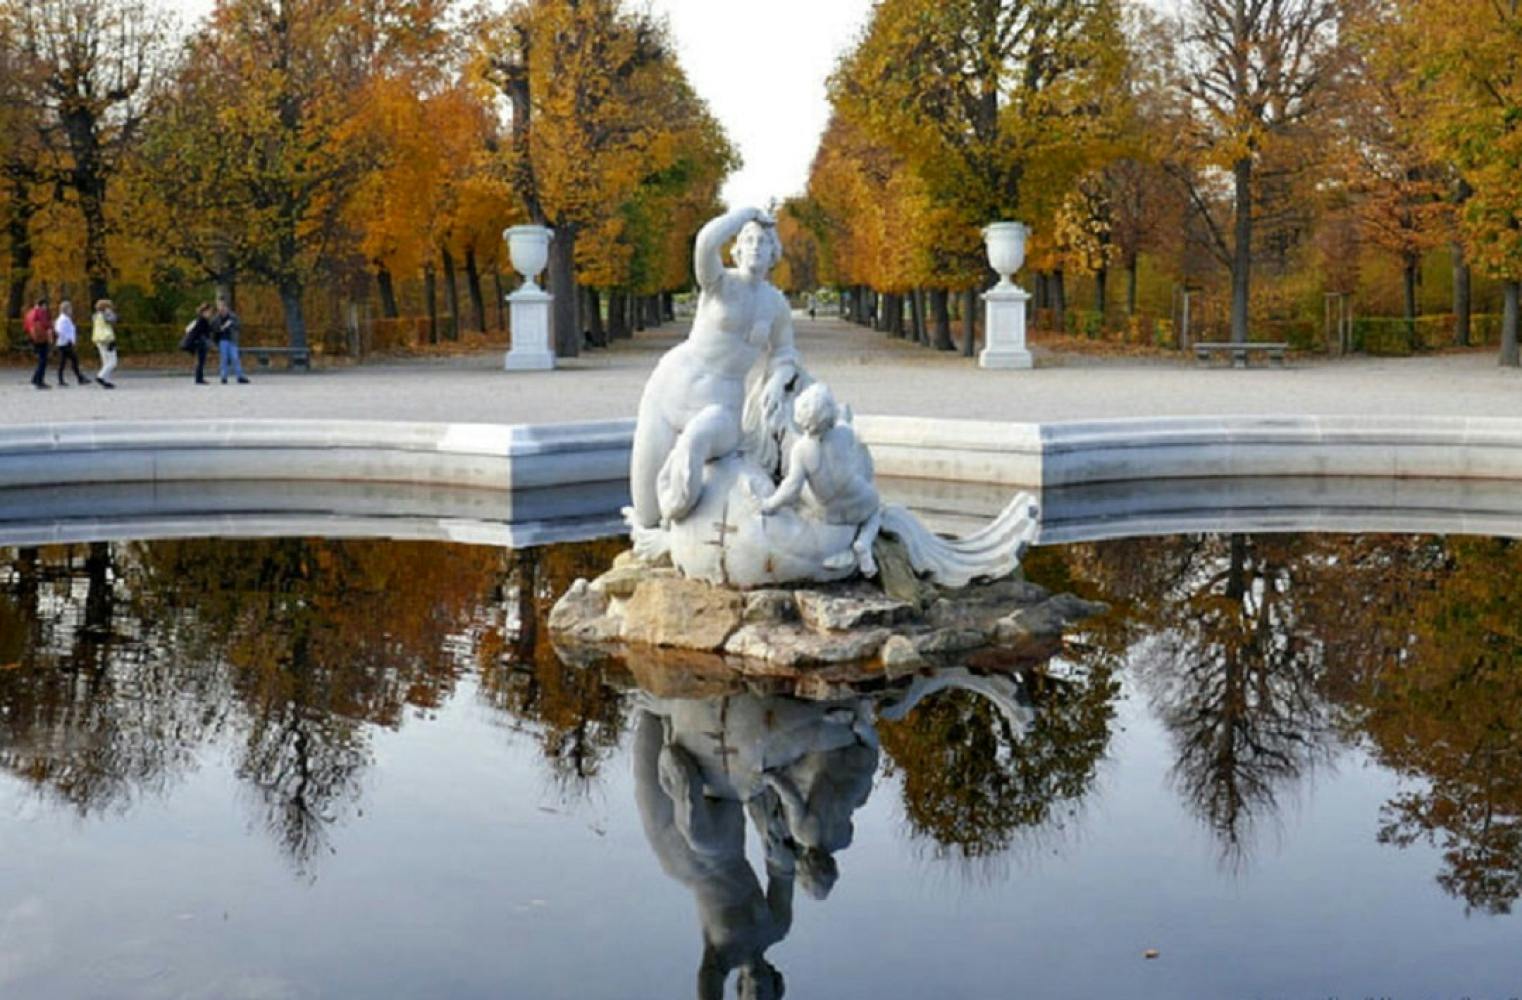 Rätselrallye im Schlosspark Schönbrunn | 75 Min Stadtrallye